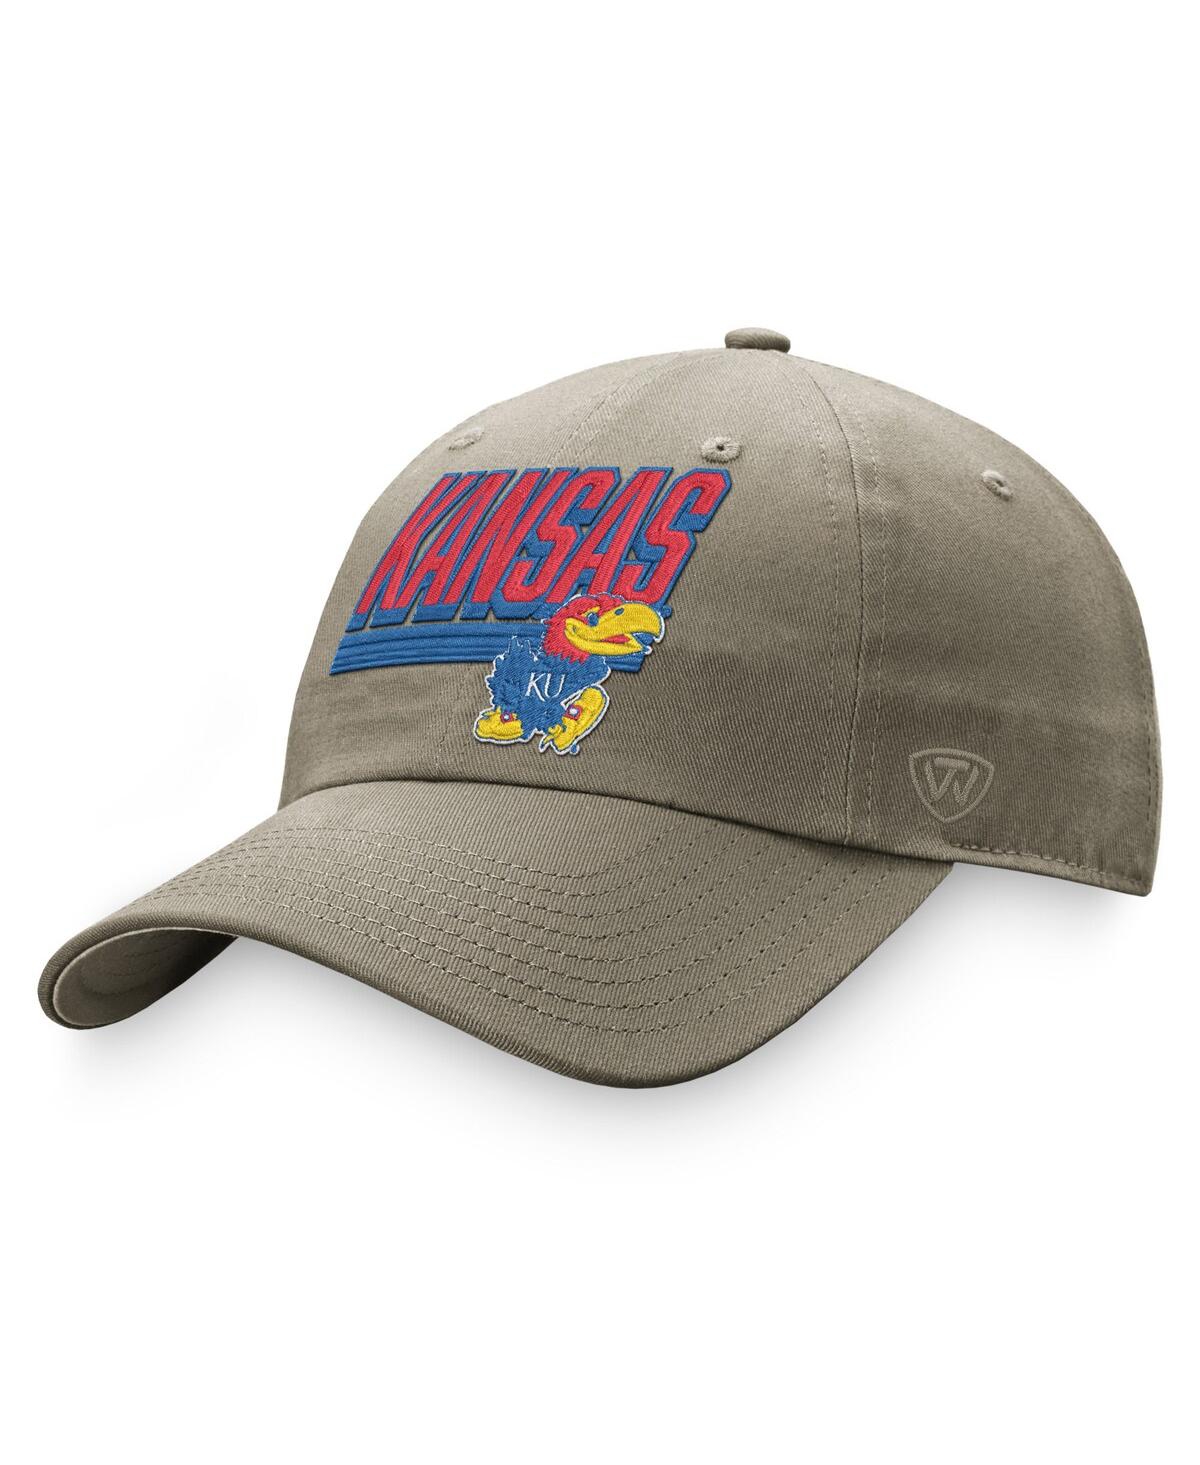 Men's Top of the World Khaki Kansas Jayhawks Slice Adjustable Hat - Khaki